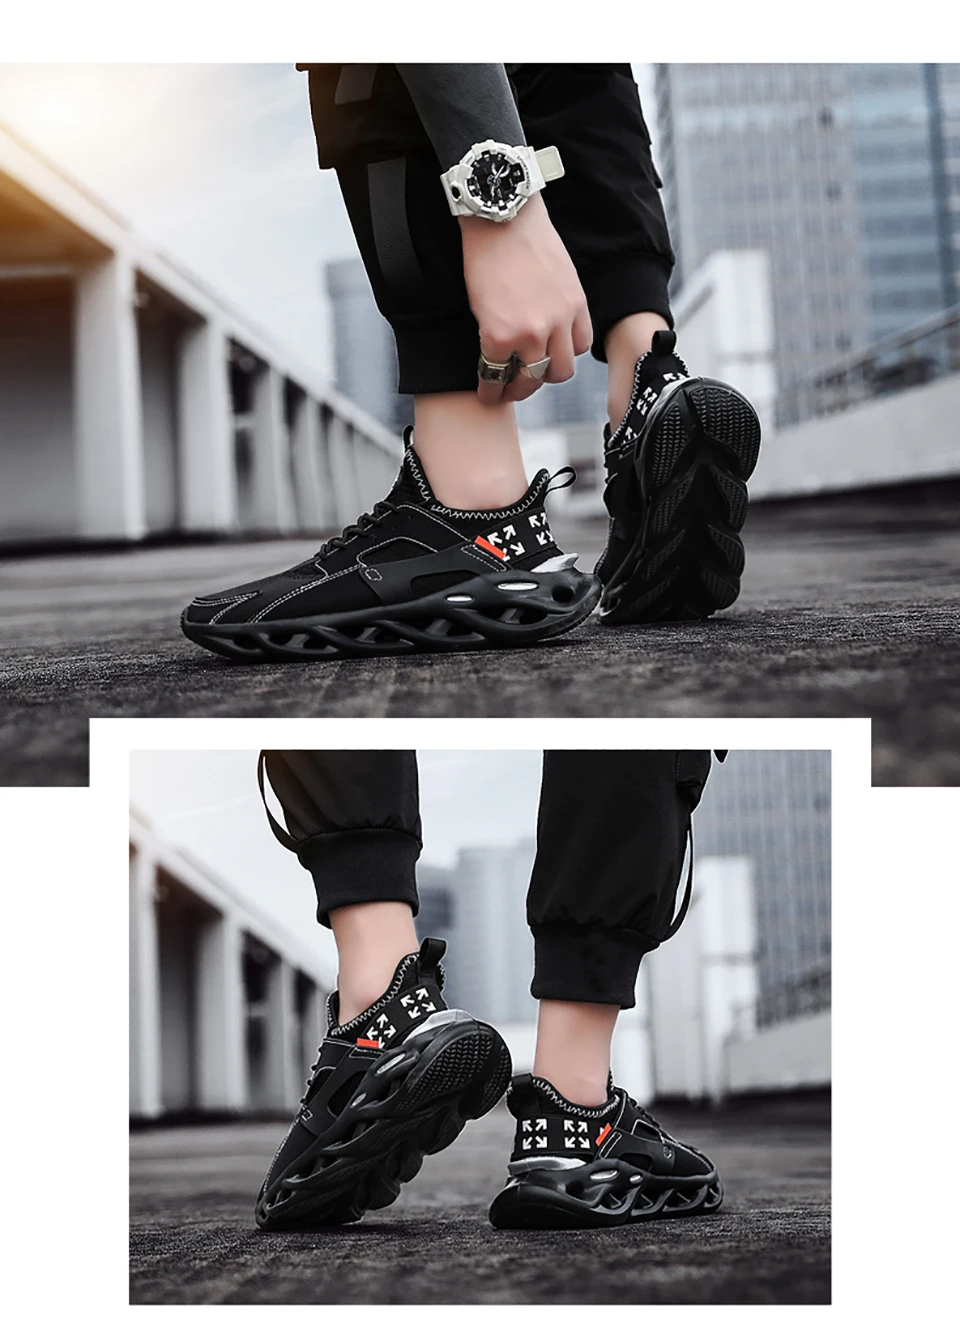 CXJYWMJL, мужские кроссовки, большие размеры 9-16, легкие, дышащие, удобные, модные, для тренировок, тянущиеся, для бега, повседневная обувь, 6857